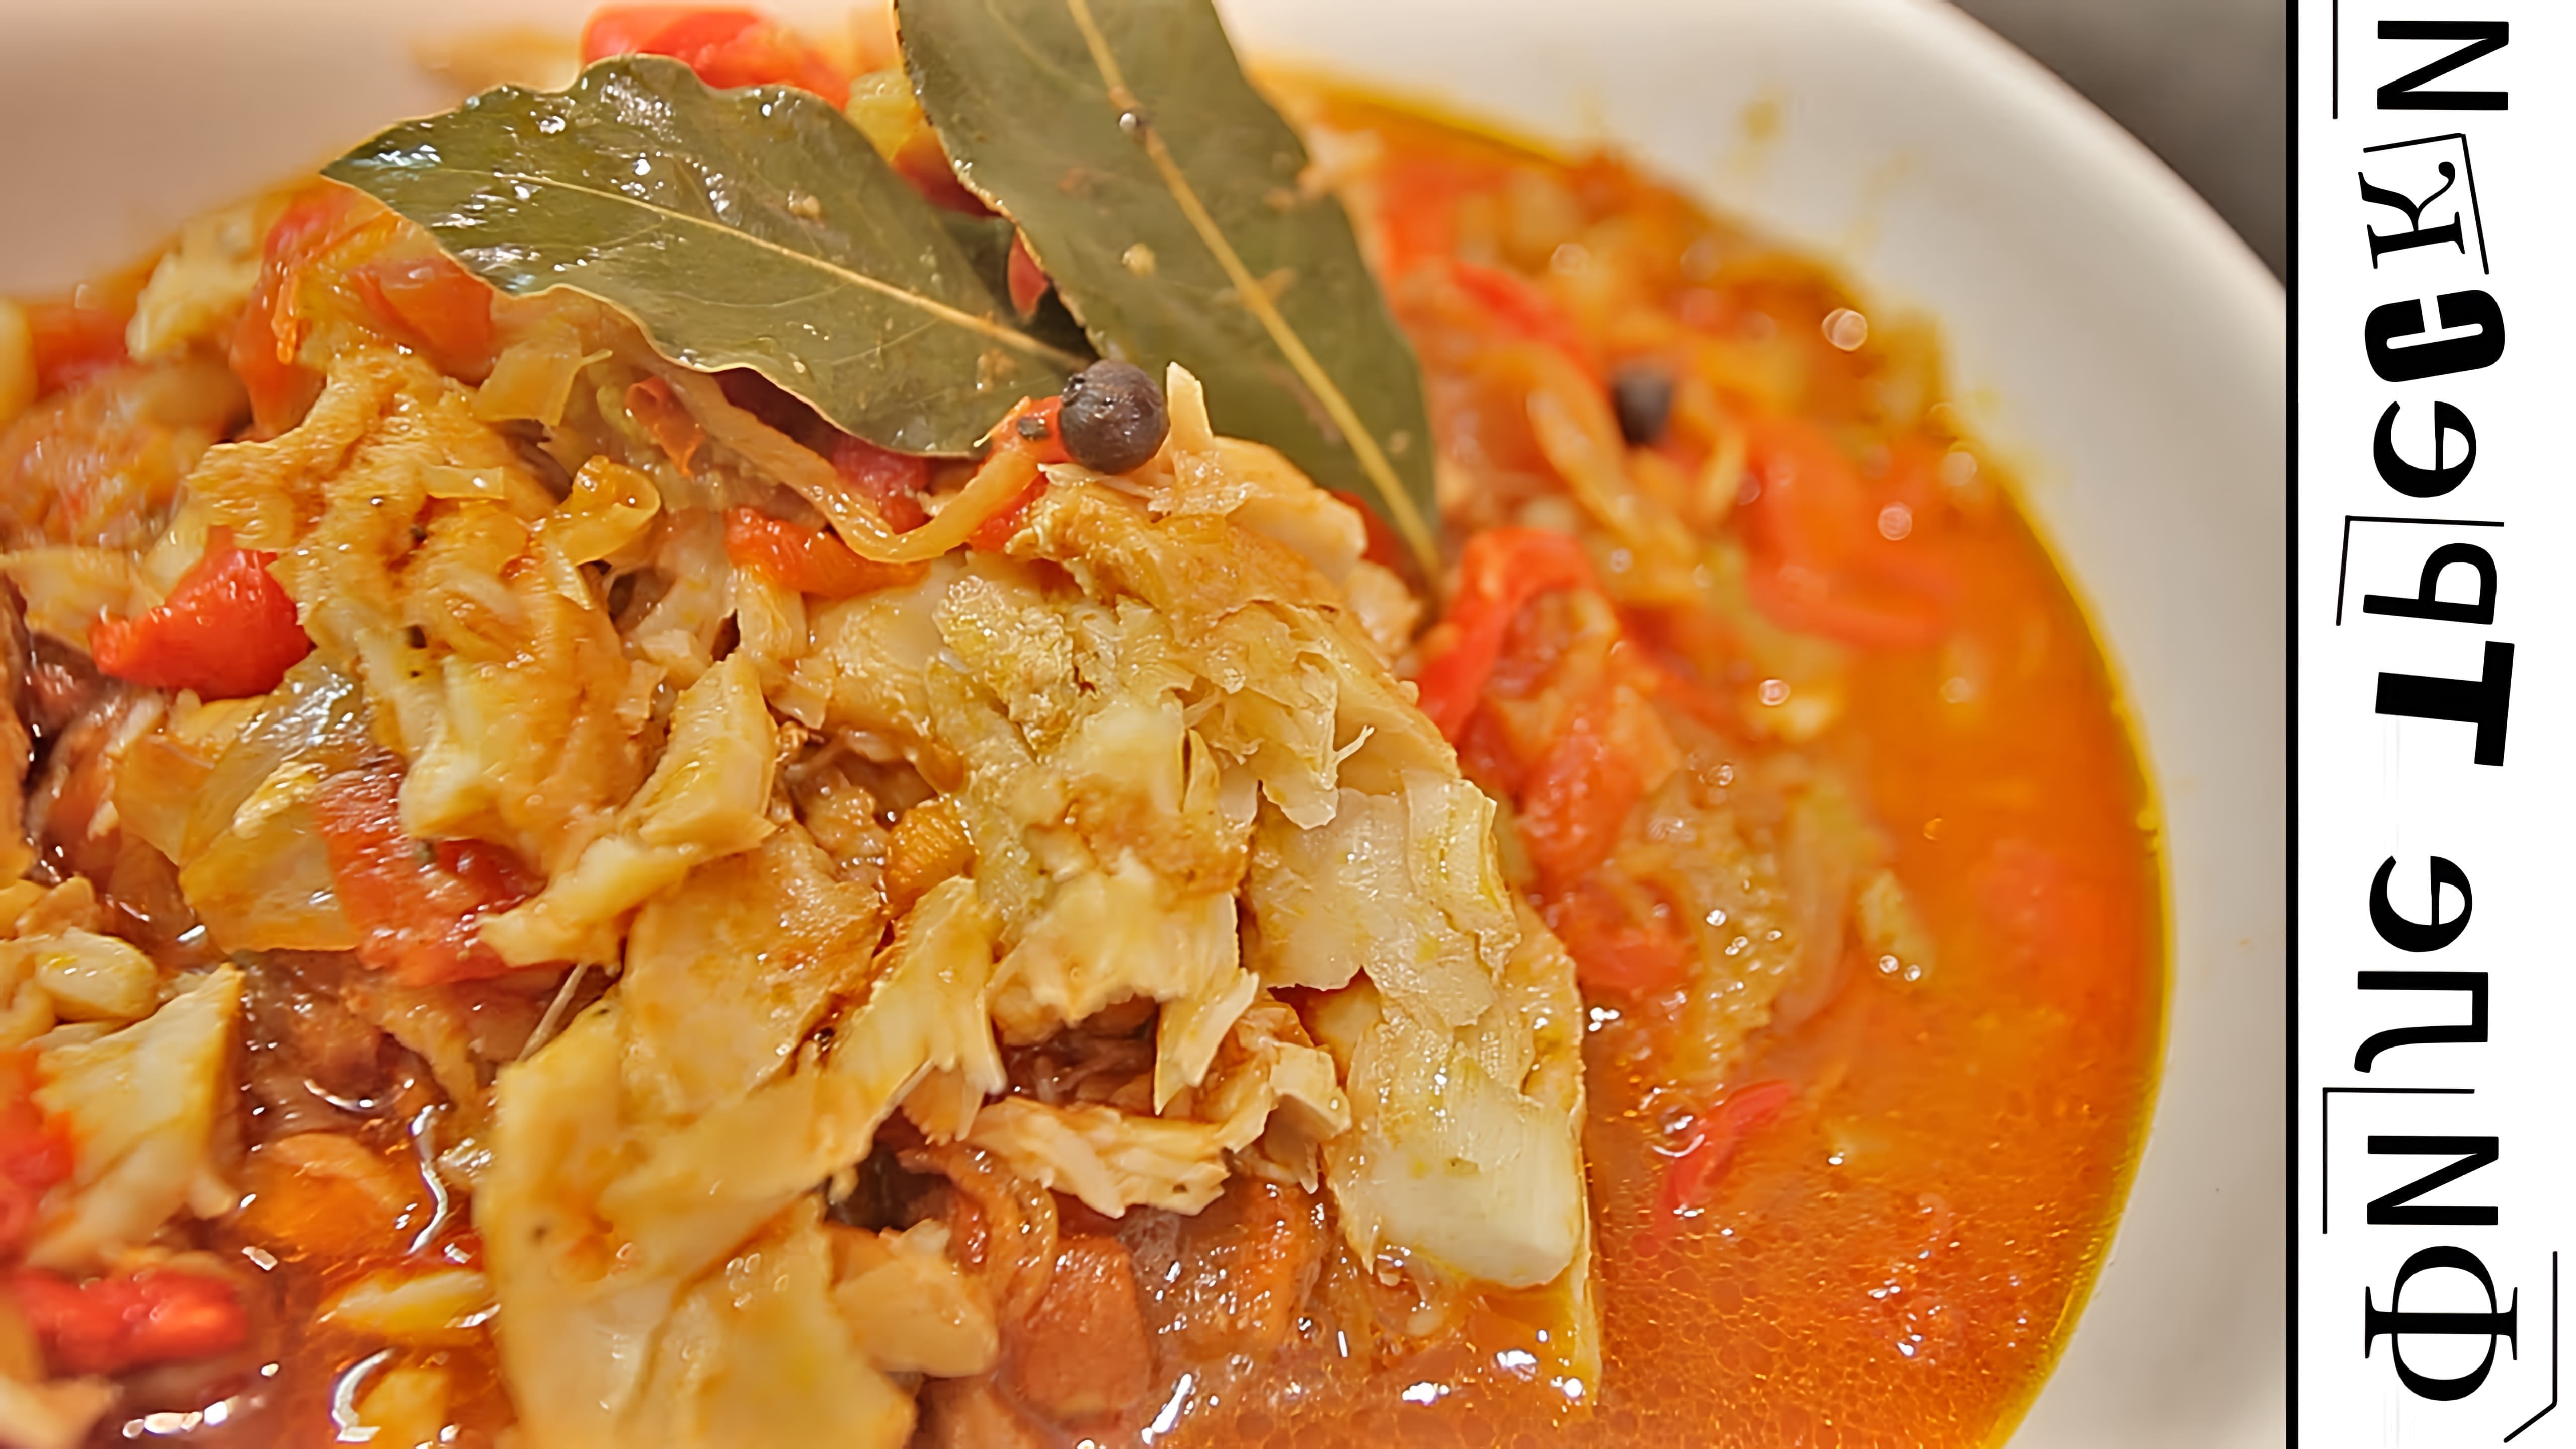 В этом видео демонстрируется рецепт приготовления вкусного и полезного рыбного блюда из филе трески